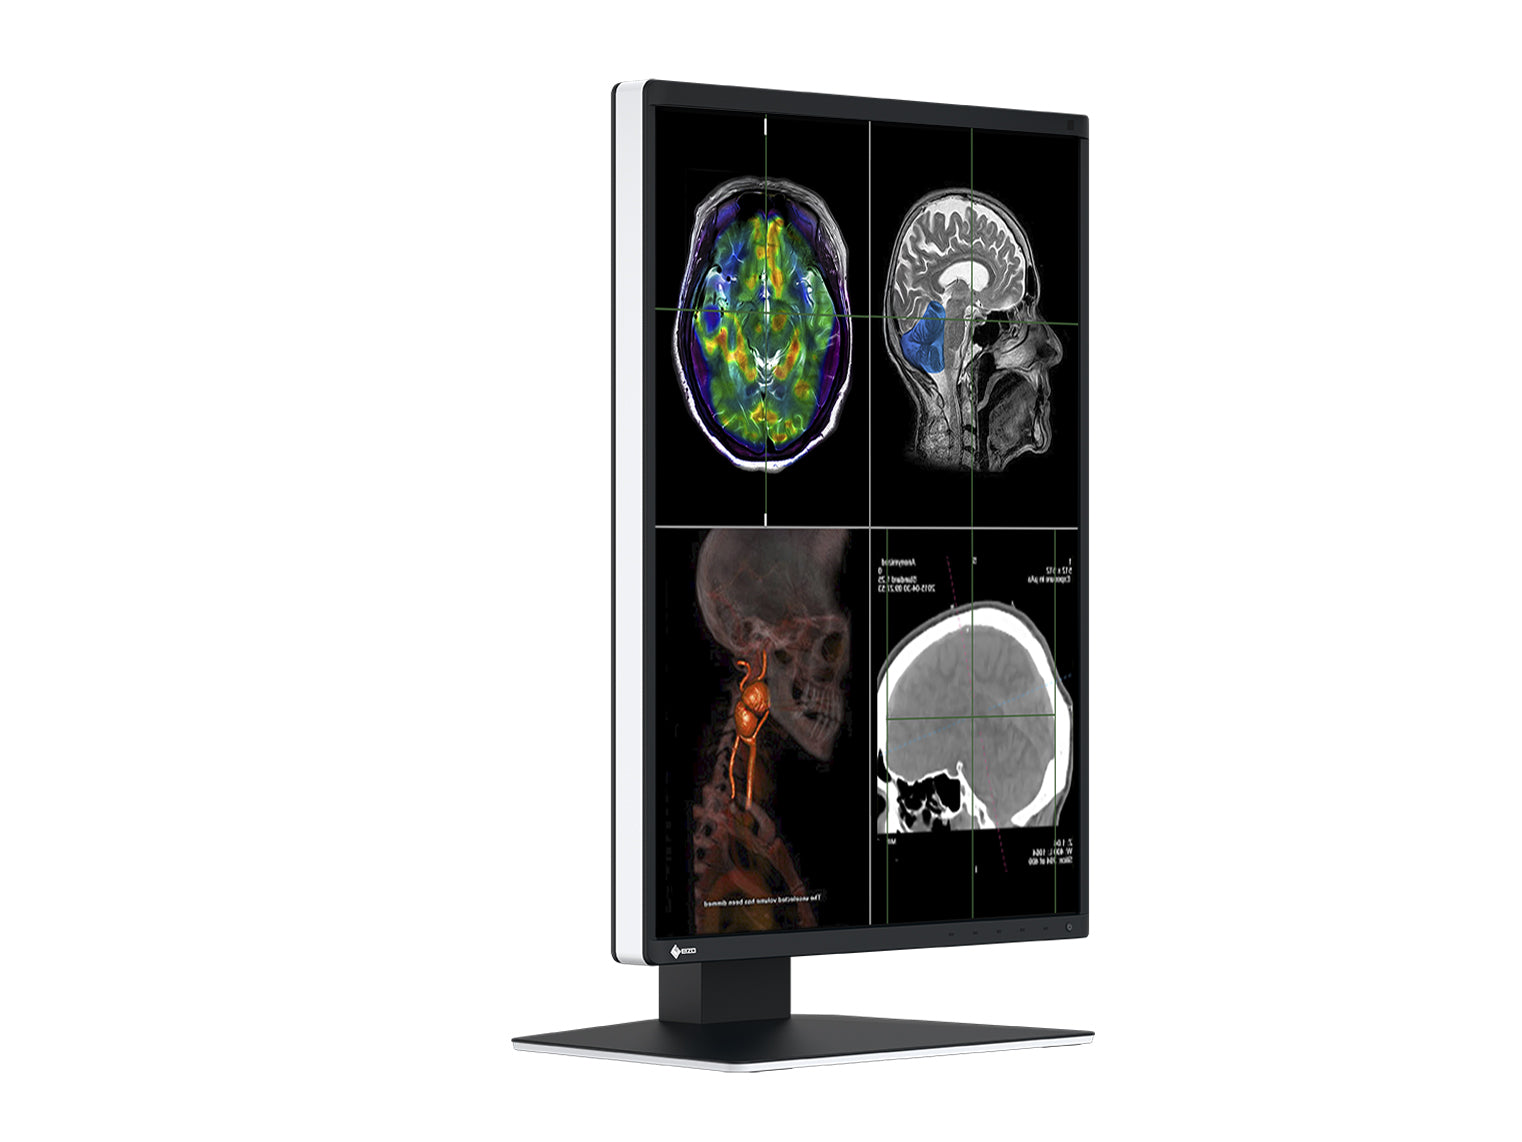 Eizo RadiForce RX370 3MP 21" Color LED General Radiology Diagnostic PACS Display (RX370) Monitors.com 